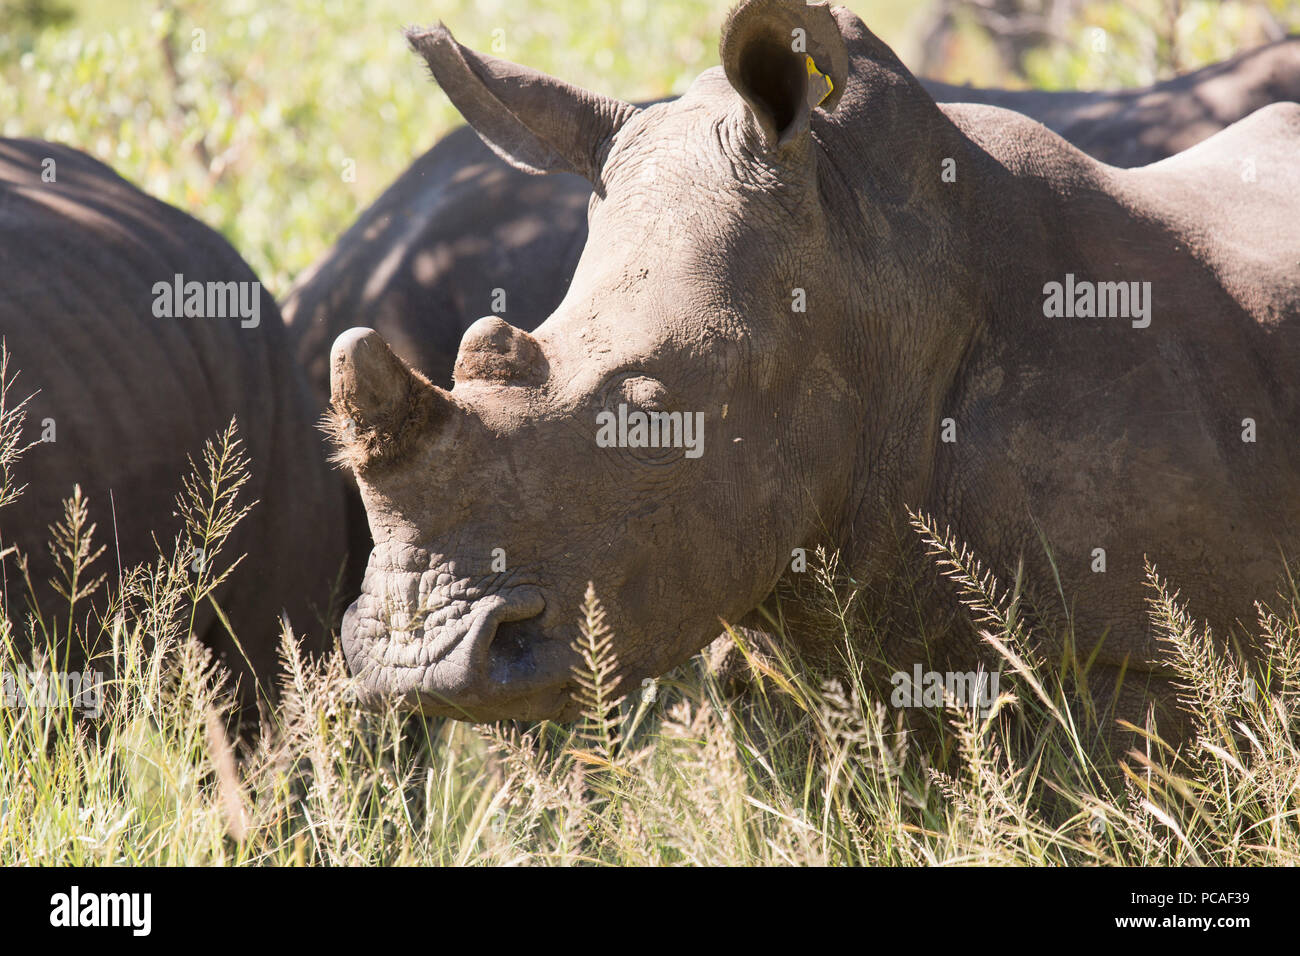 A group of white rhinos (Ceratotherium simum) (square-lipped rhinoceros), Matobo National Park, Zimbabwe, Africa Stock Photo